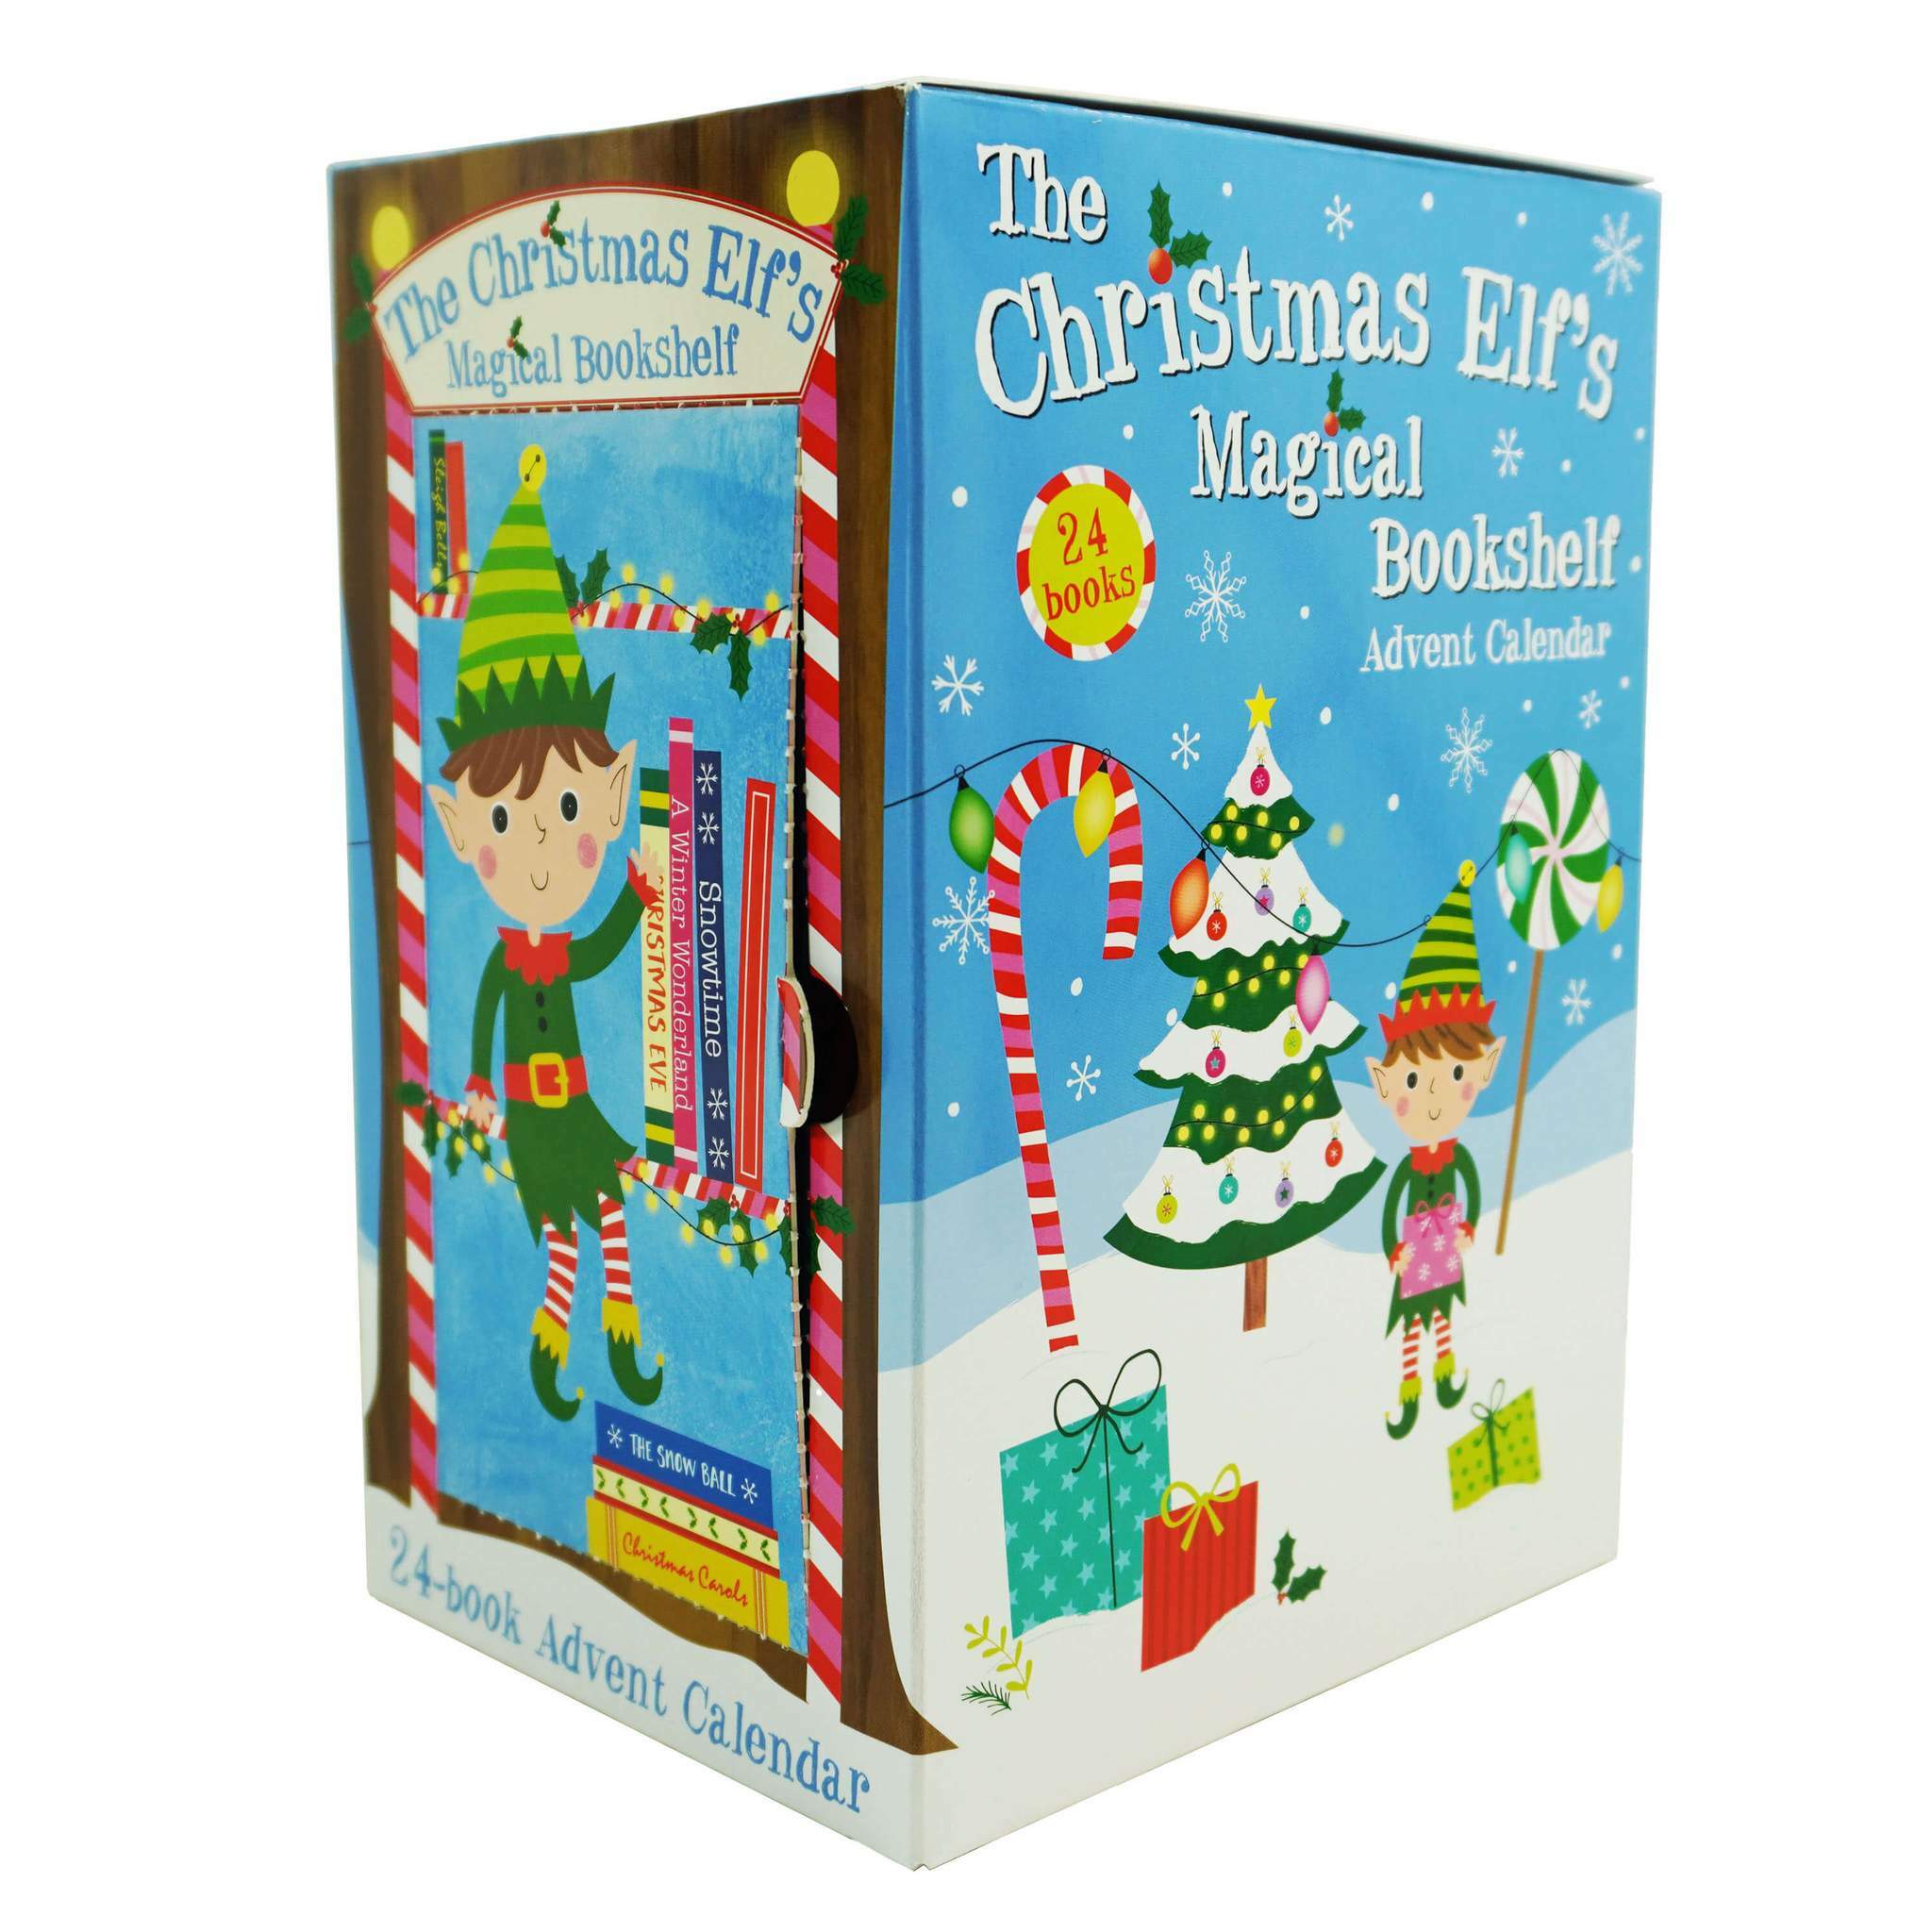 The Christmas Elfs Magical Bookshelf Advent Calendar : Contains 24 books! (Paperback)